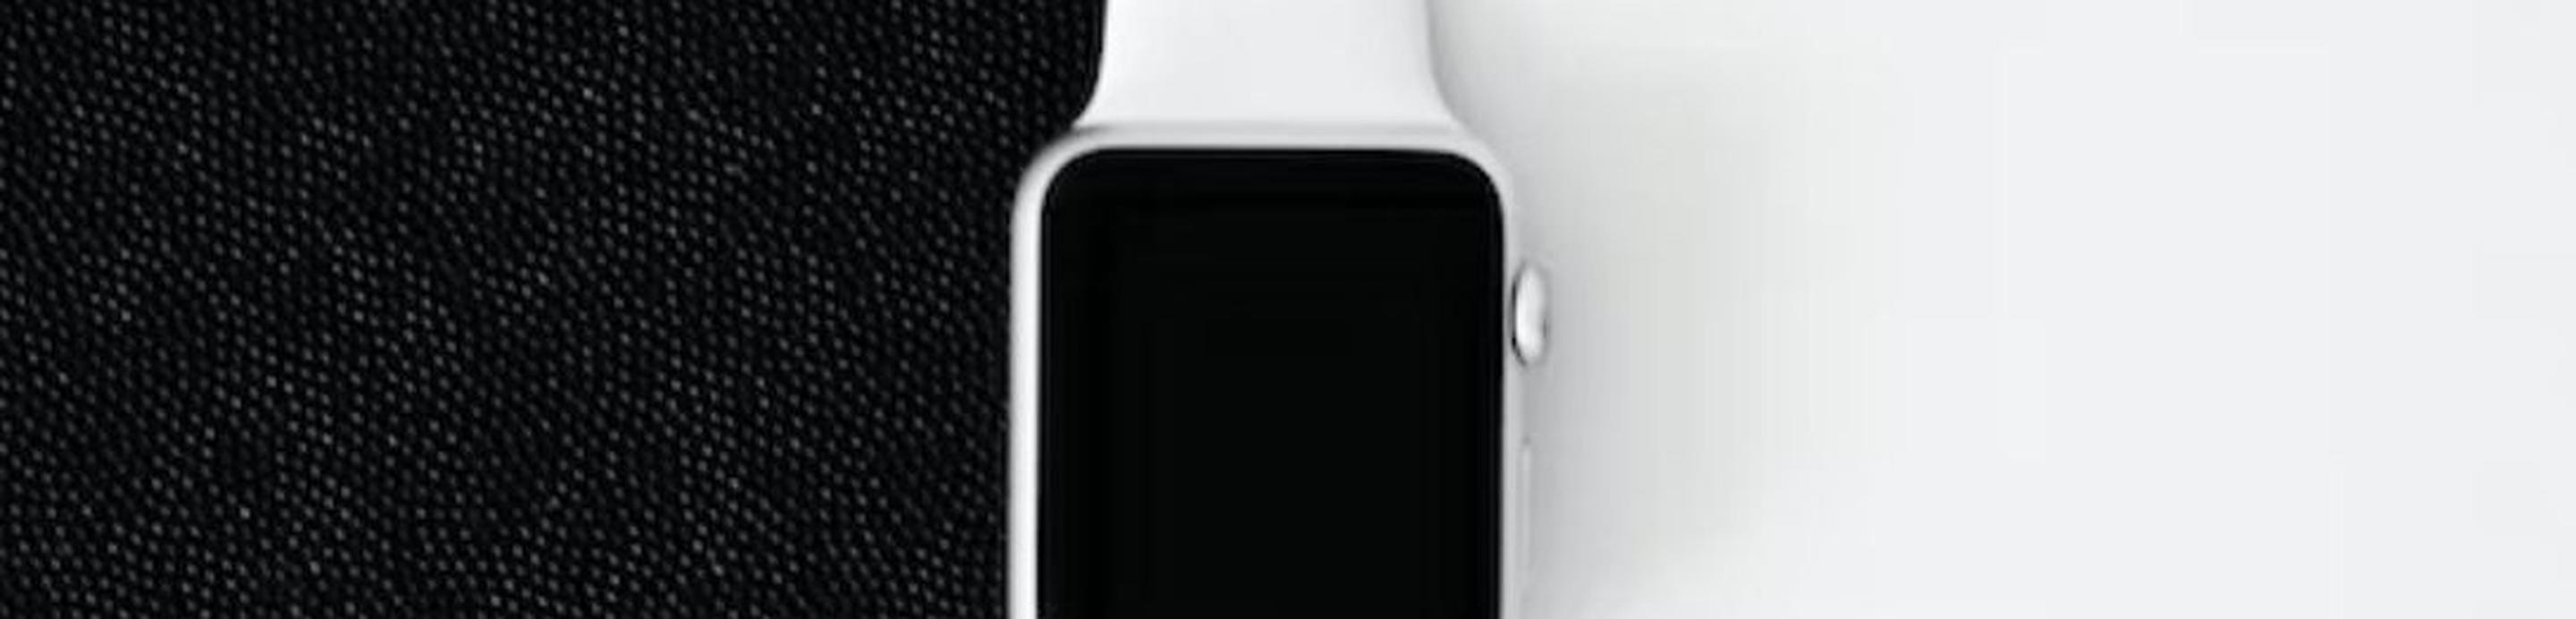 Une Apple Watch sur un fond moitié noir, moitié blanc.